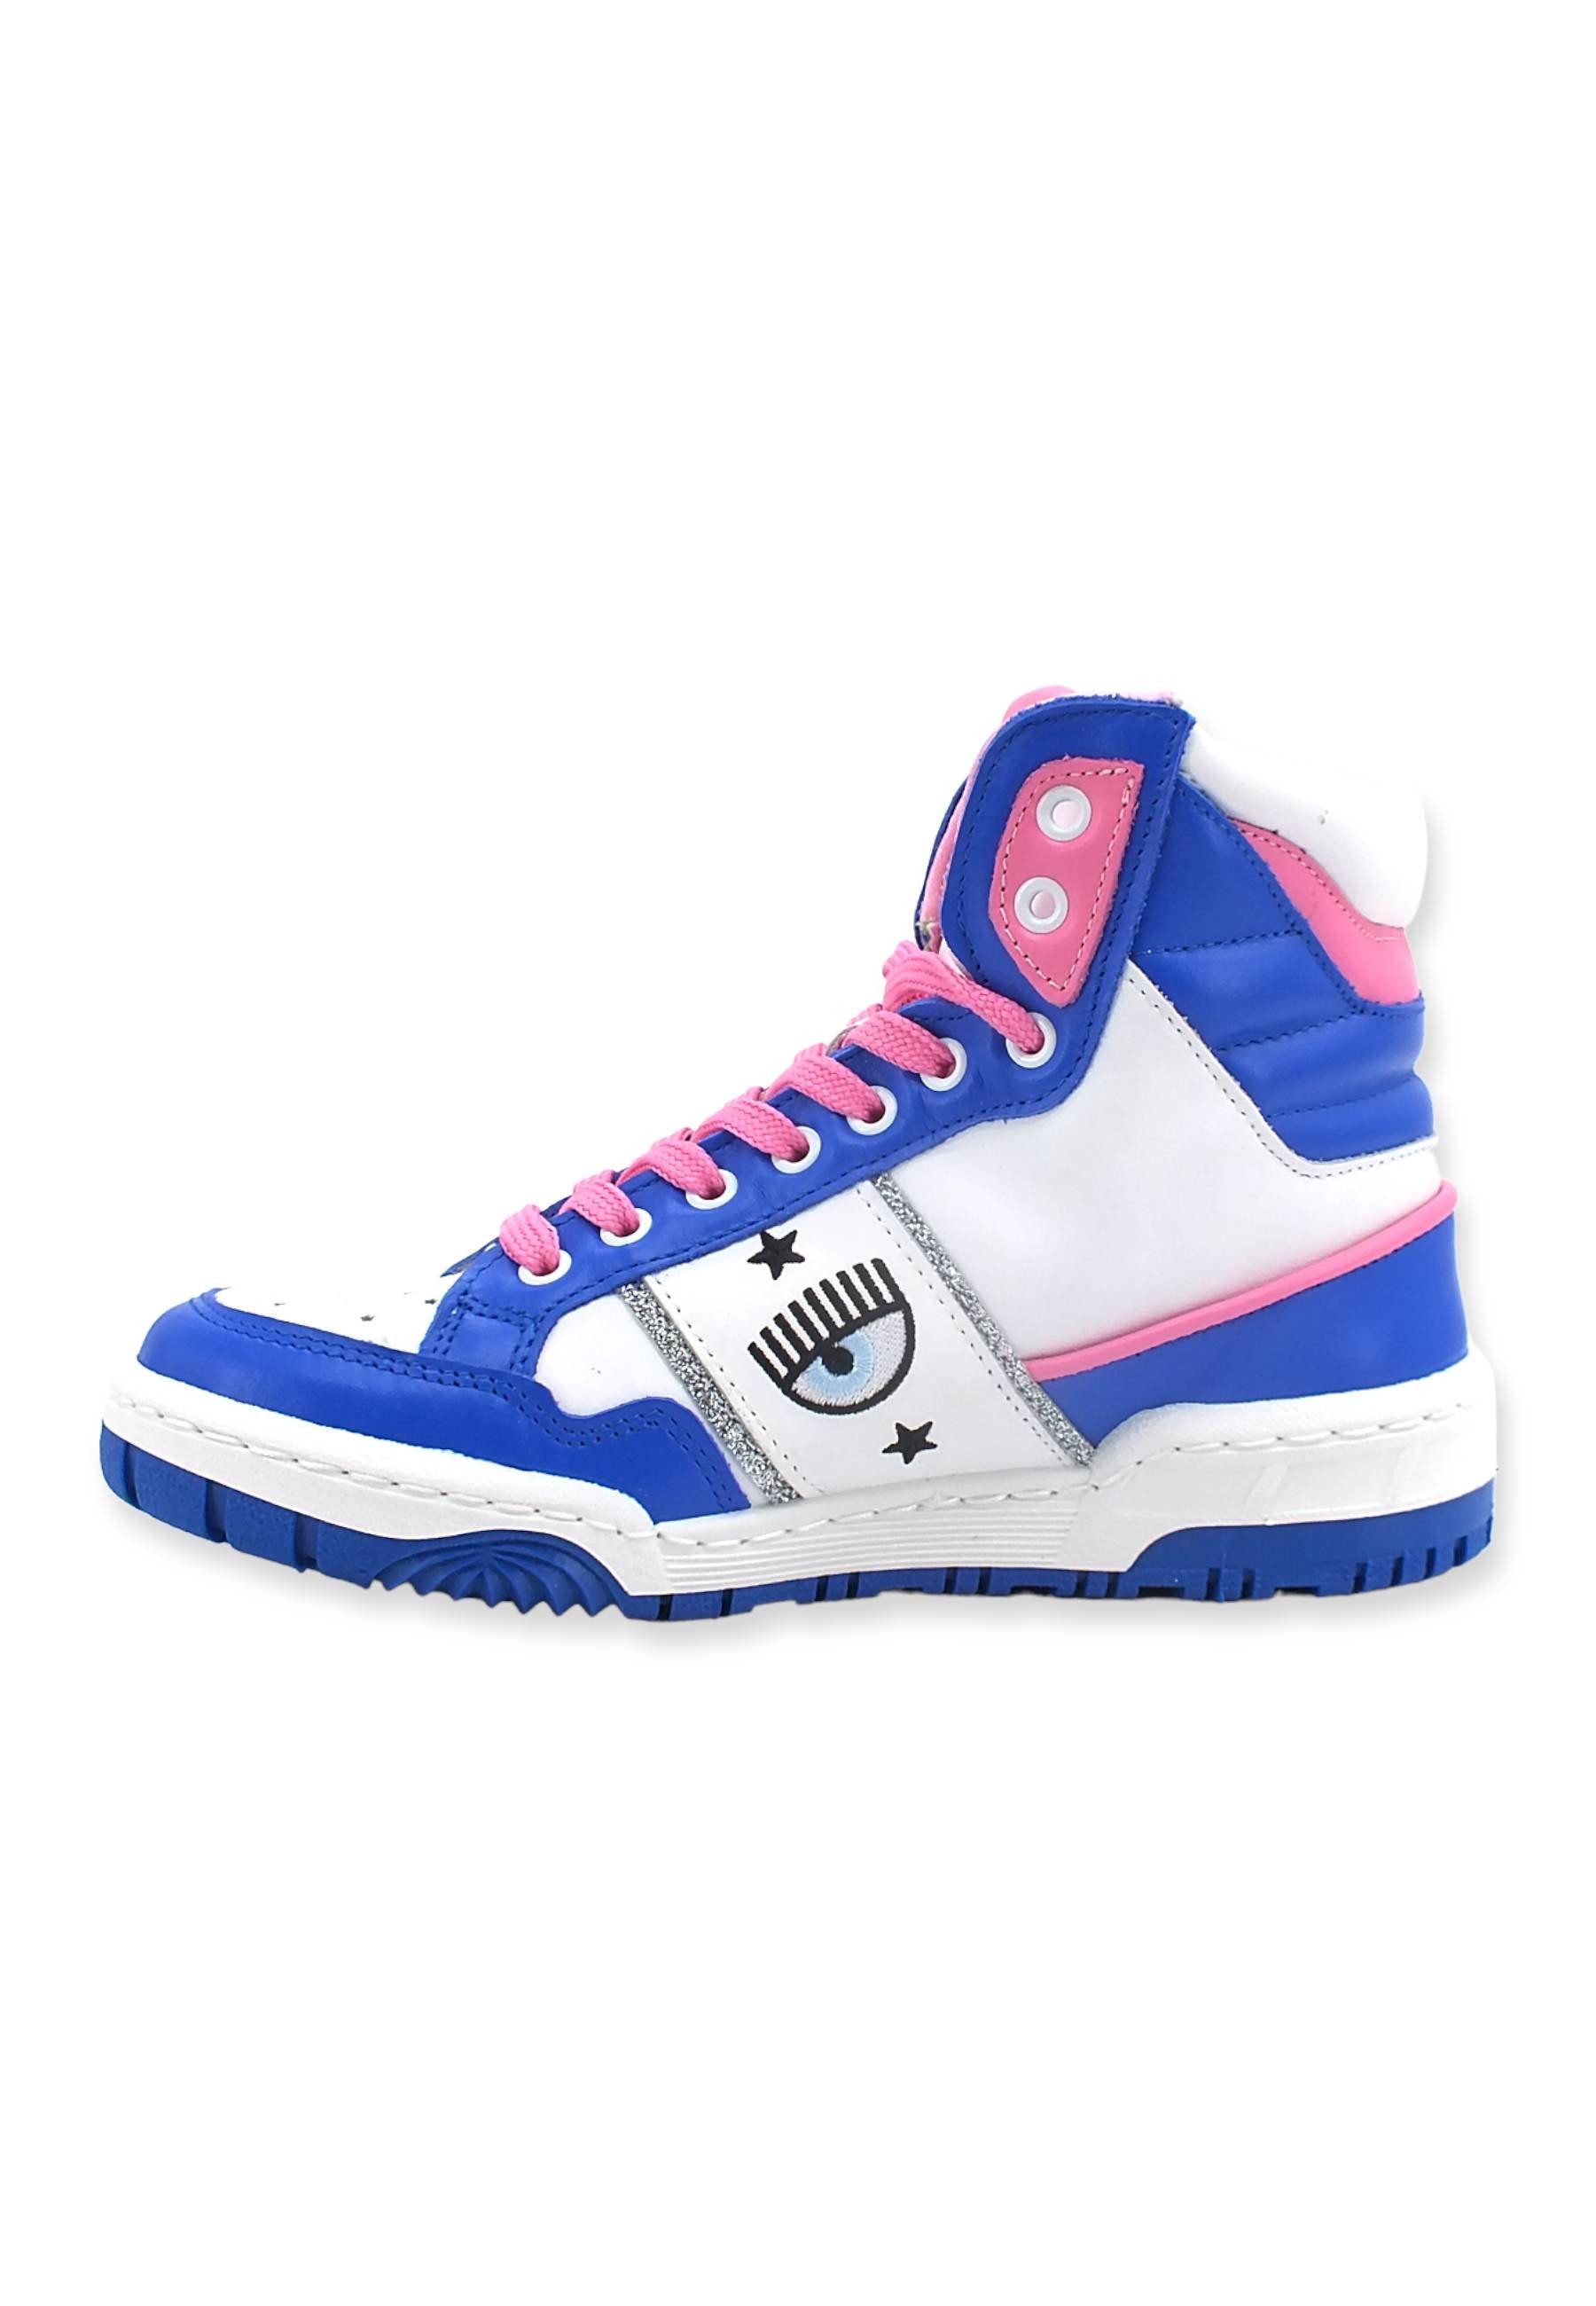 CHIARA FERRAGNI Sneaker High Donna White Blue CF3006-032 - Sandrini Calzature e Abbigliamento